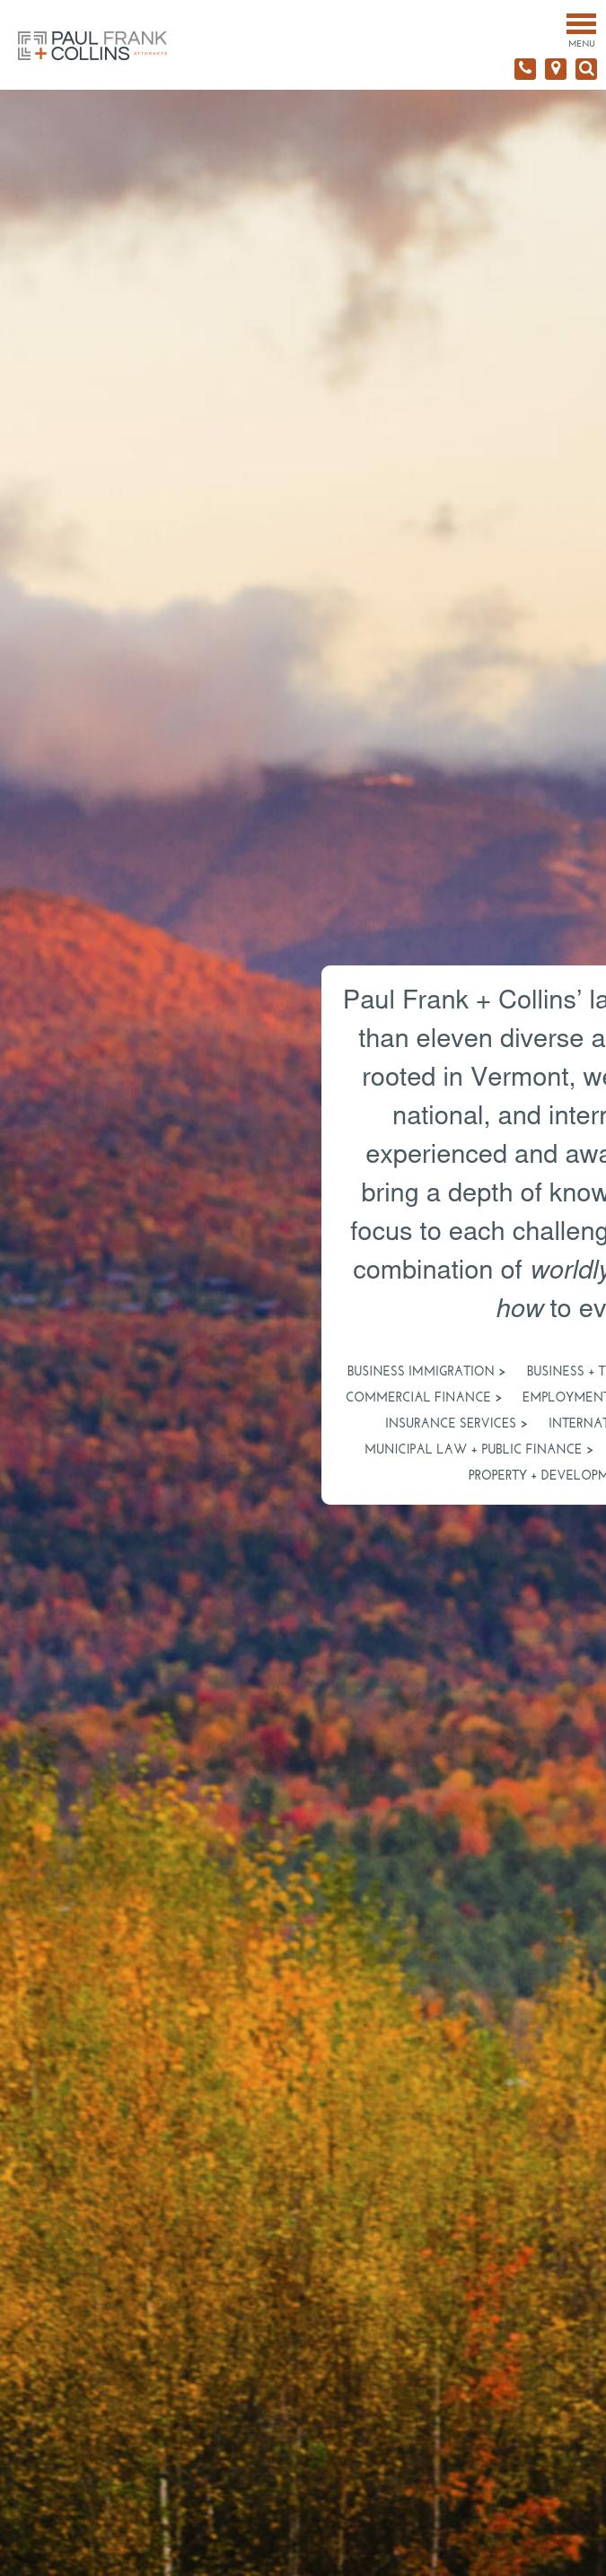 Paul Frank + Collins P.C. - Burlington VT Lawyers